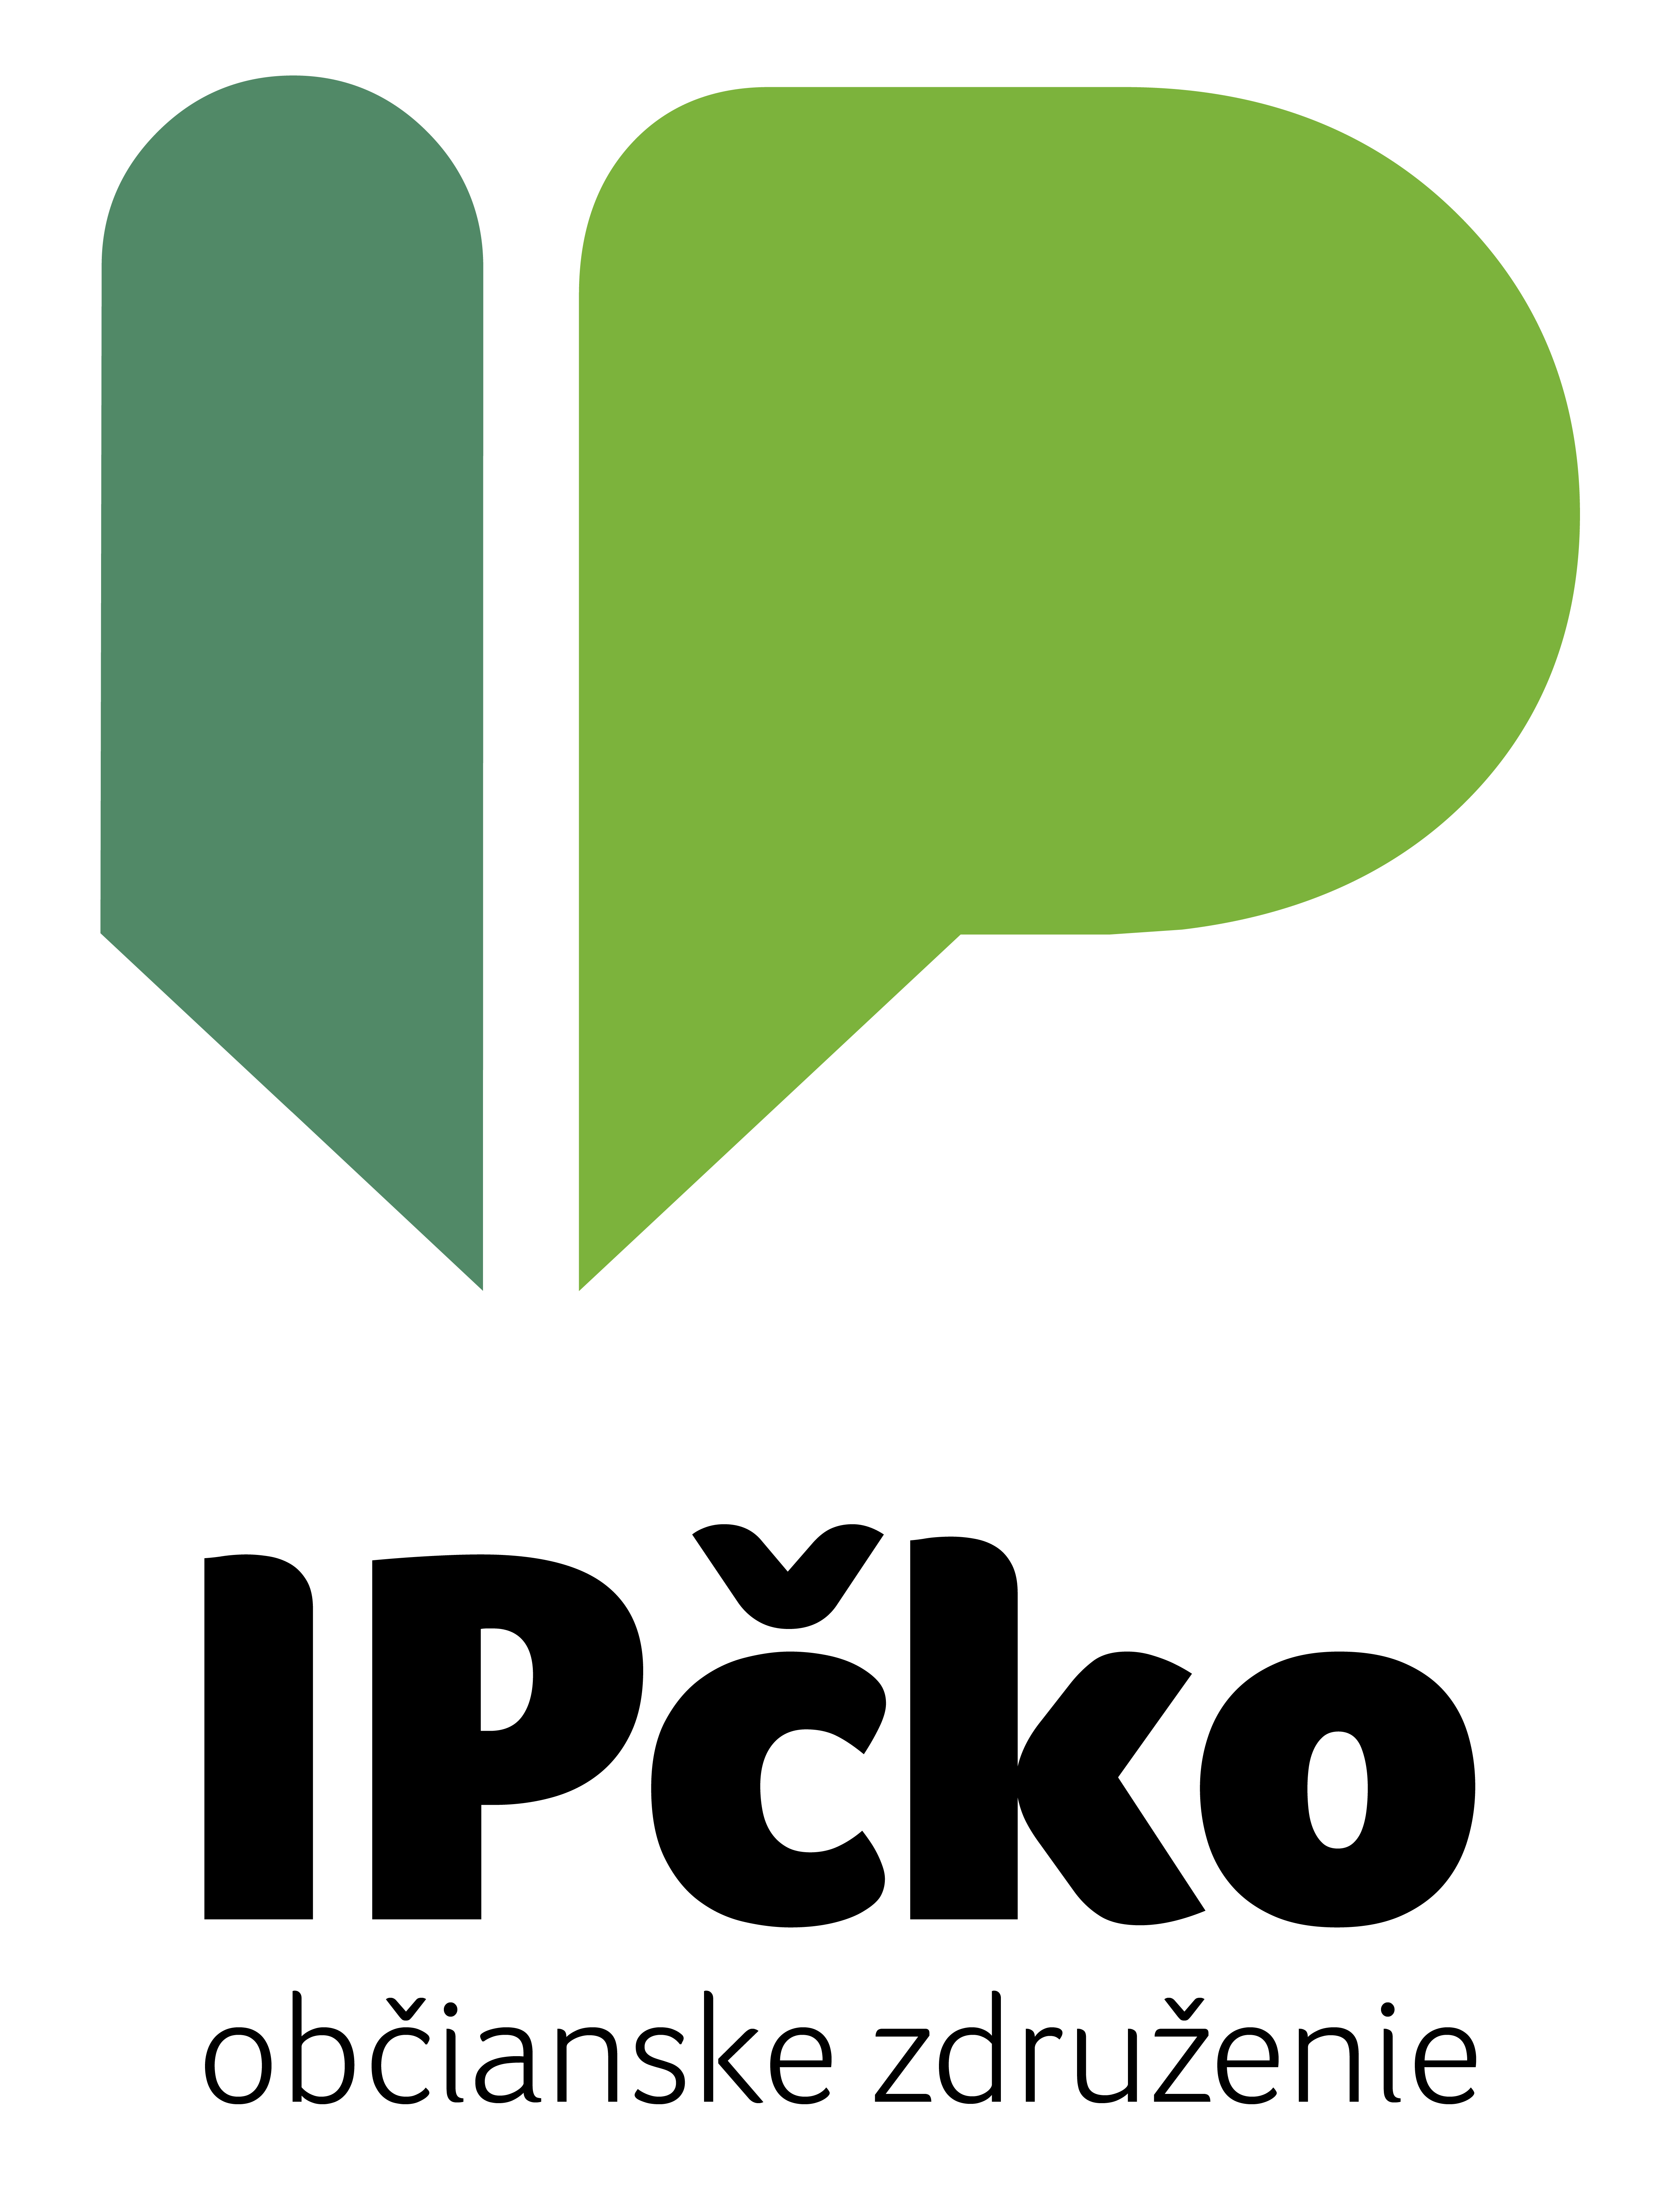 IPcko